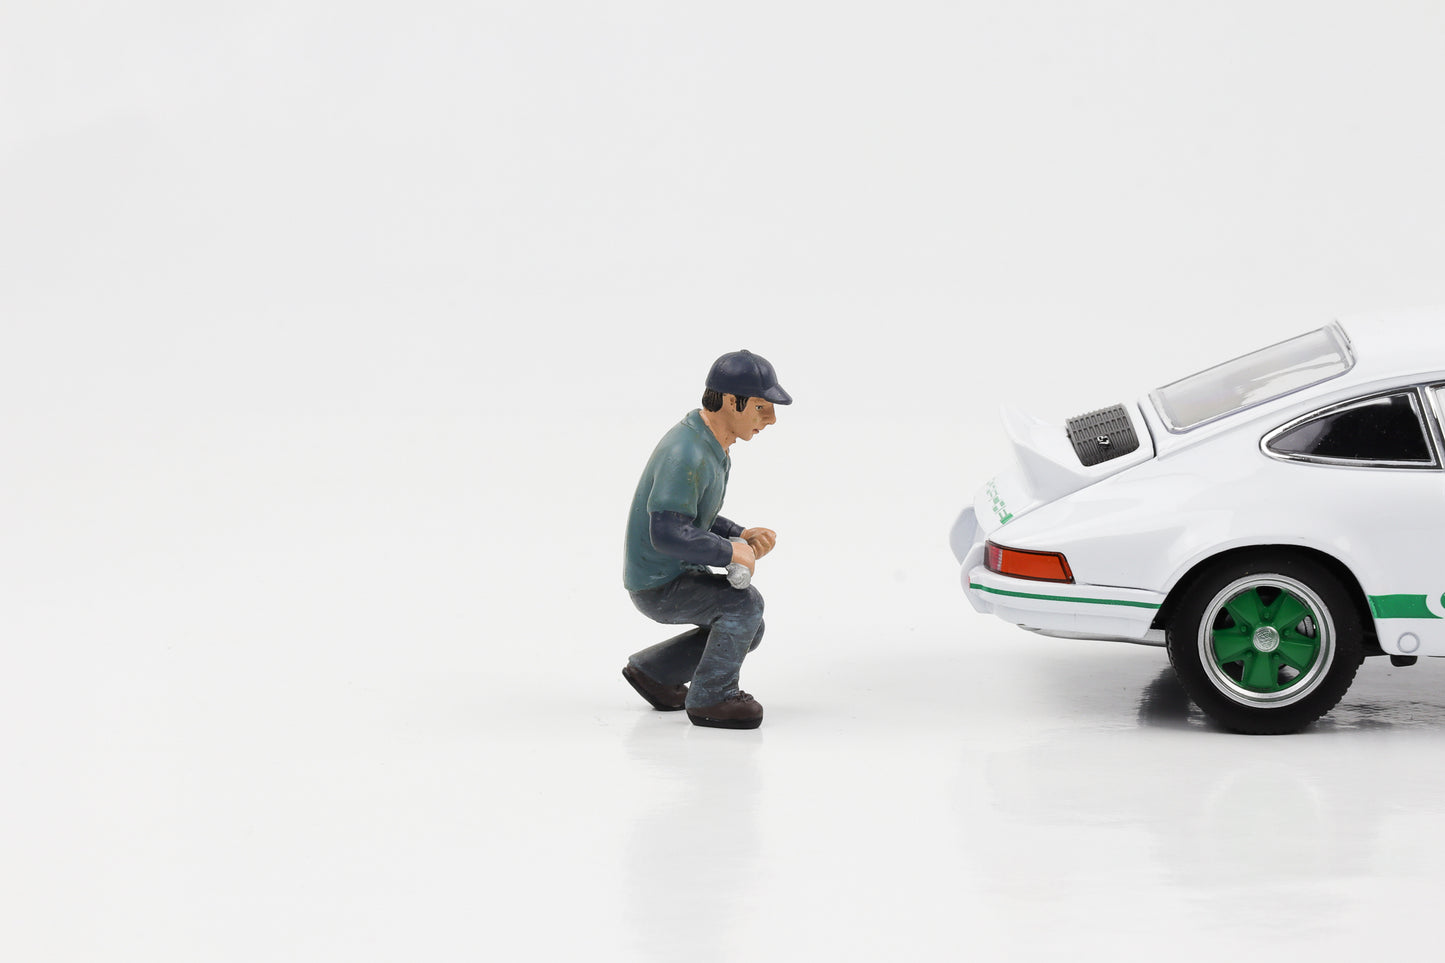 1:24 figura mecânico de automóveis Lucas ferramenta de agachamento American Diorama figuras